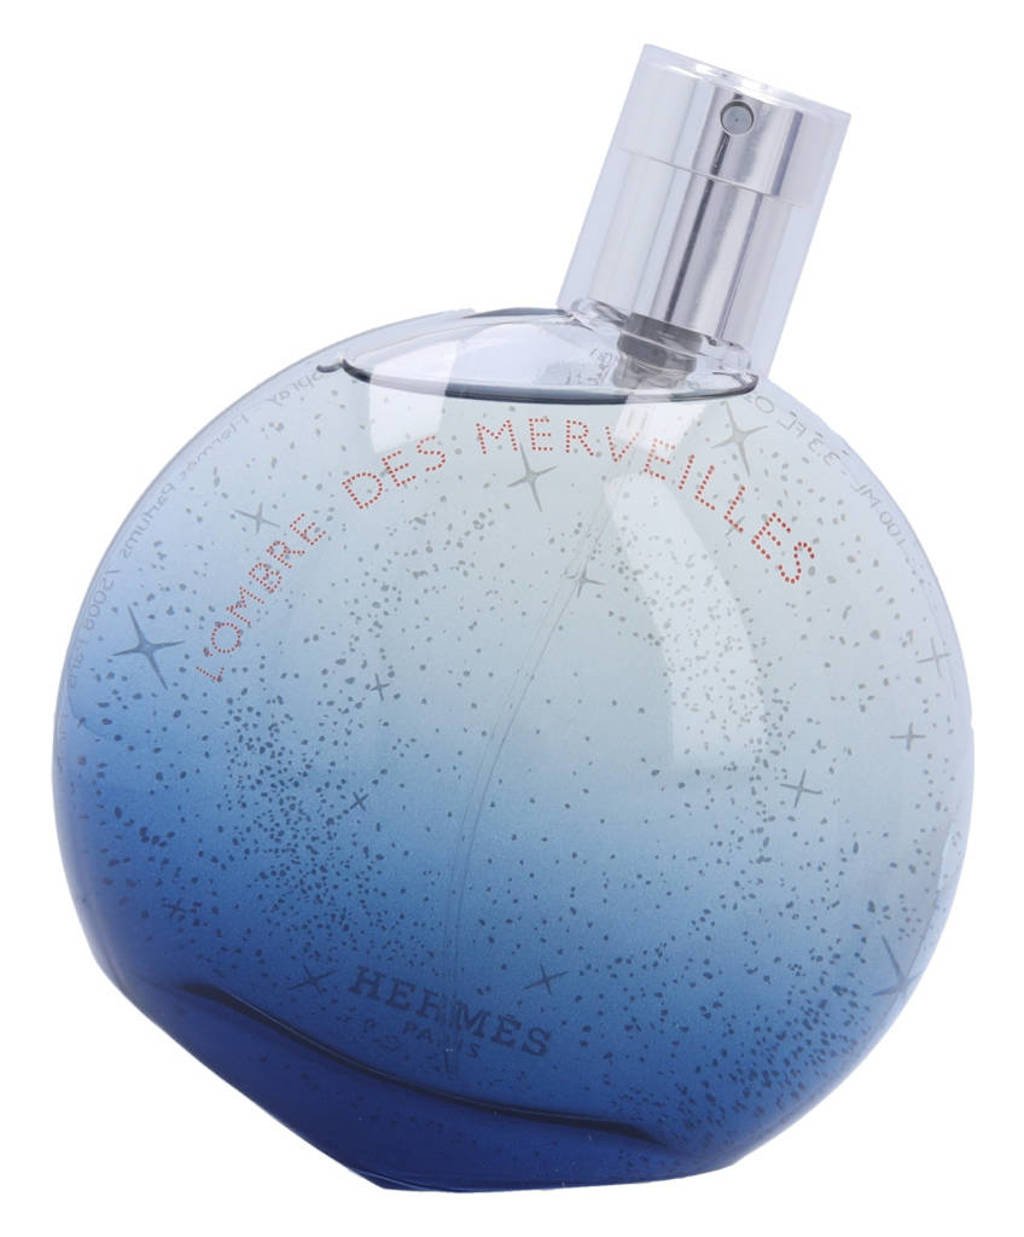 Hermes Paris L'Ombre Des Merveilles eau de parfum - 100 ml